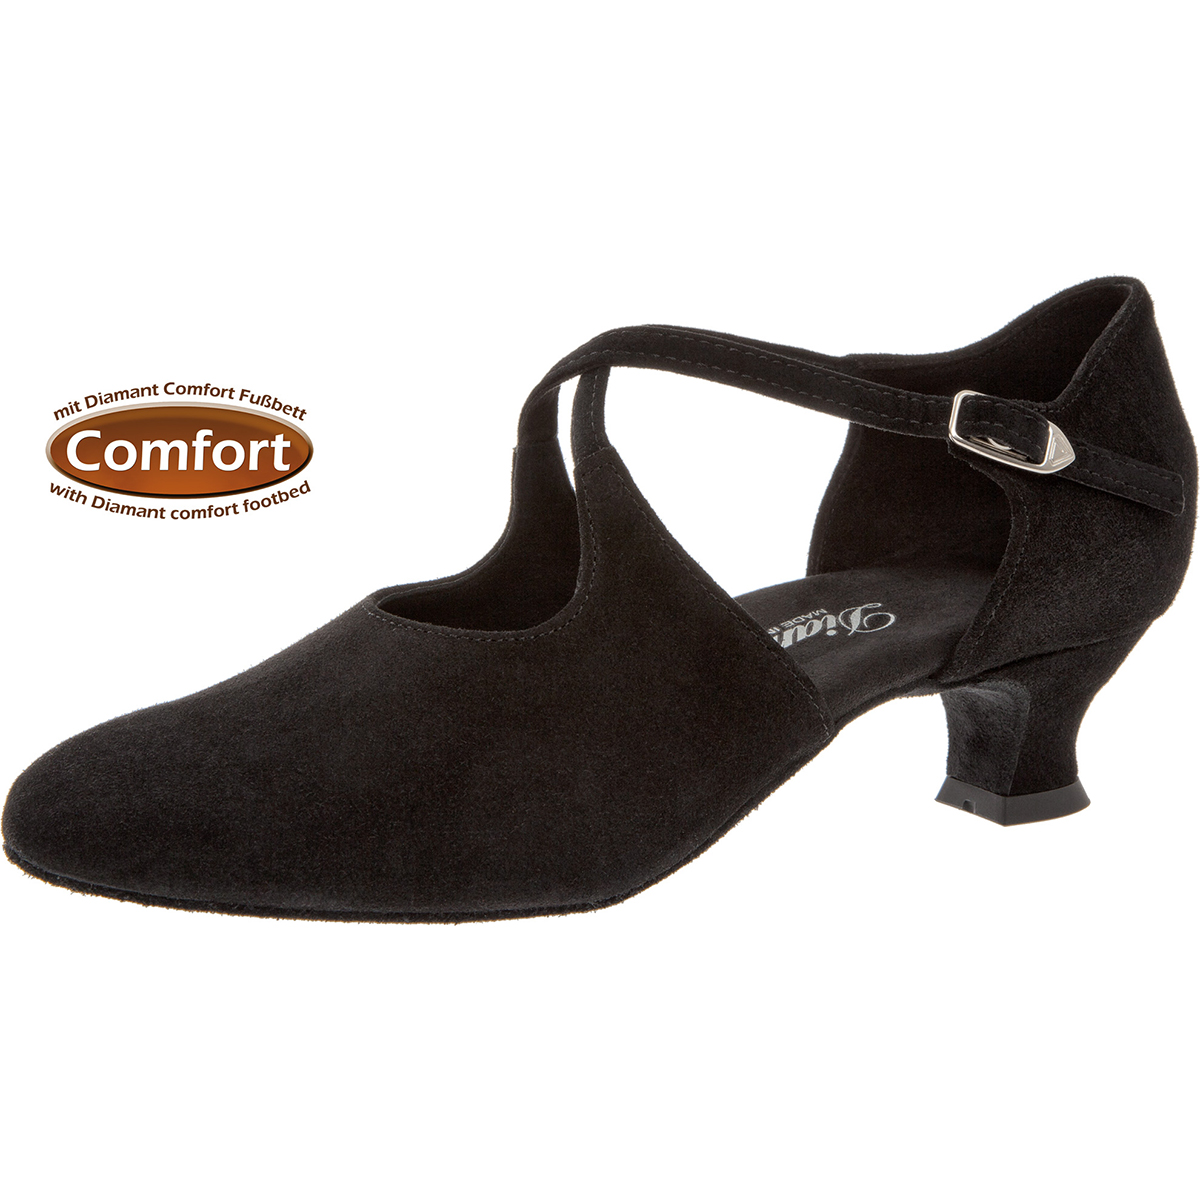 Zapato CRUZADO de baile de salón y latino, con suela de cuero y tacón fino  de 7 cm.